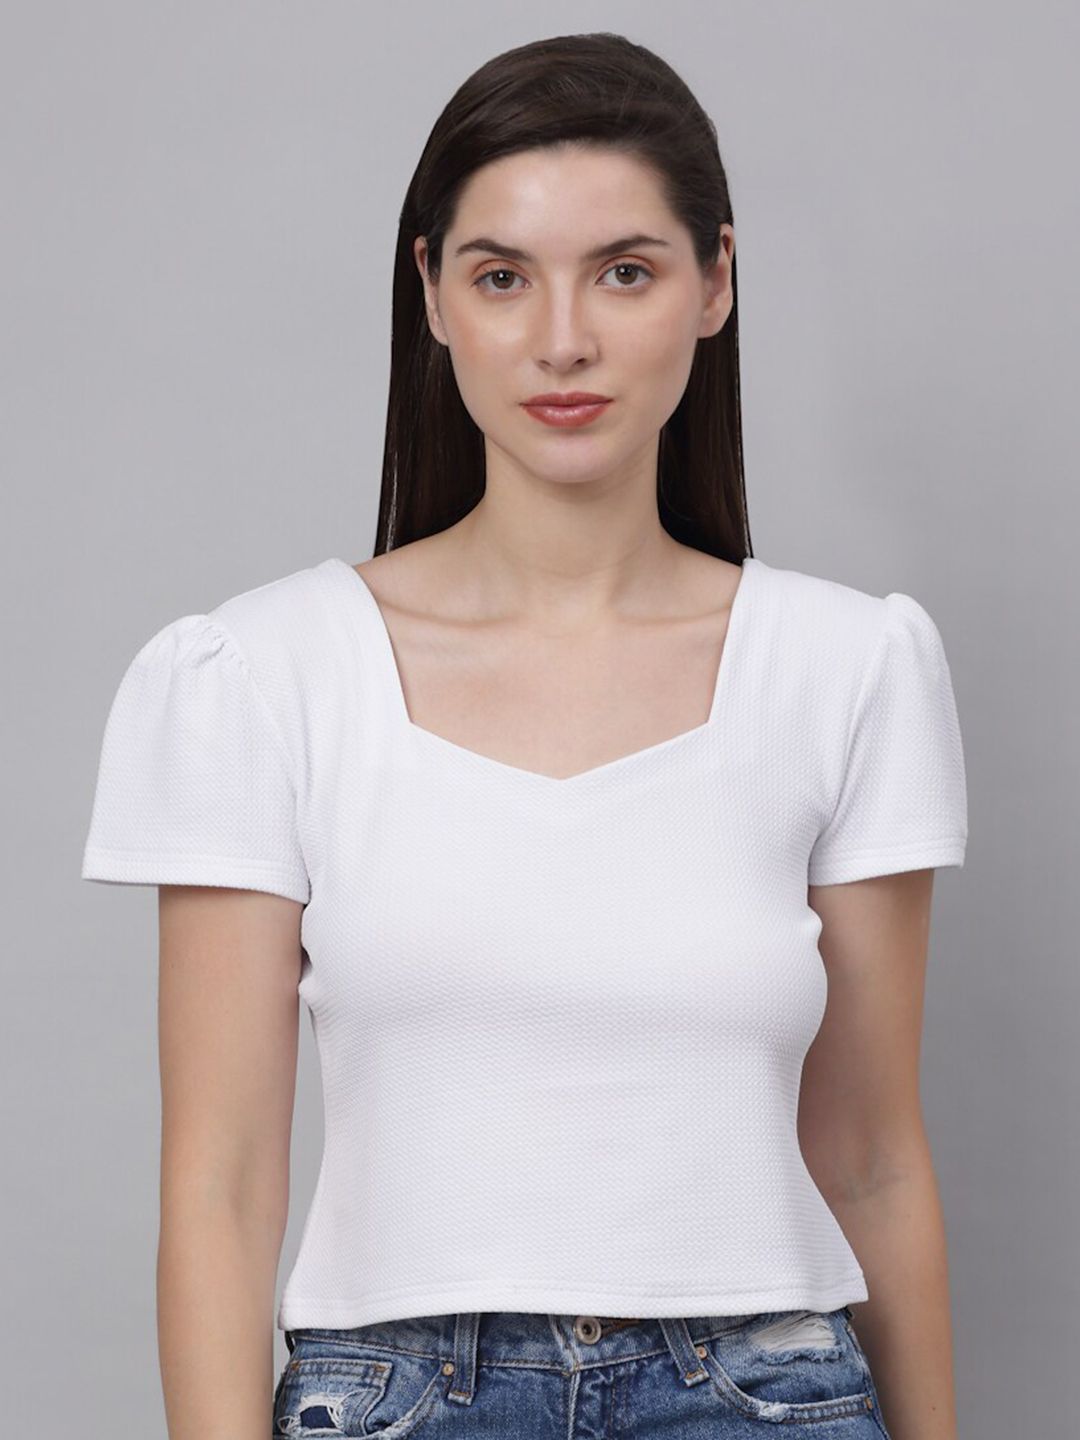 NEUDIS Woman White Puff Sleeve Top Price in India